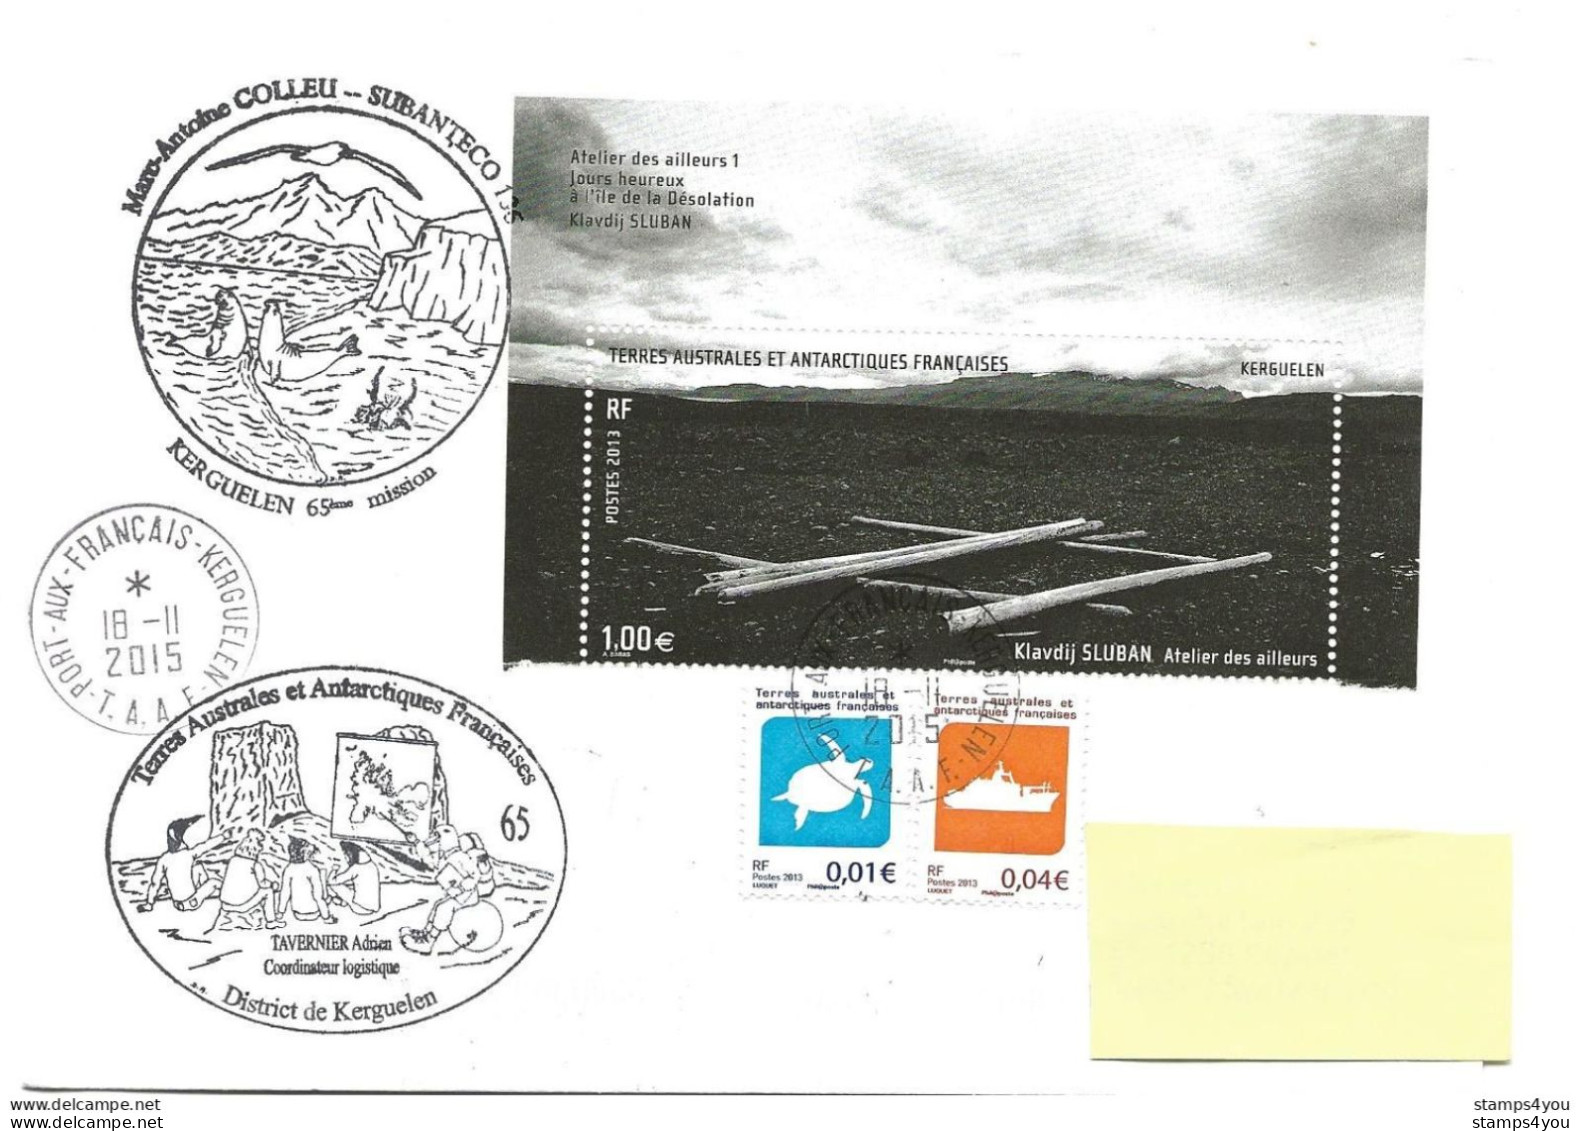 440 - 34 - Enveloppe TAAF Kerguelen - Cachets Illustrés Mission 65 - 2015 - Basi Scientifiche